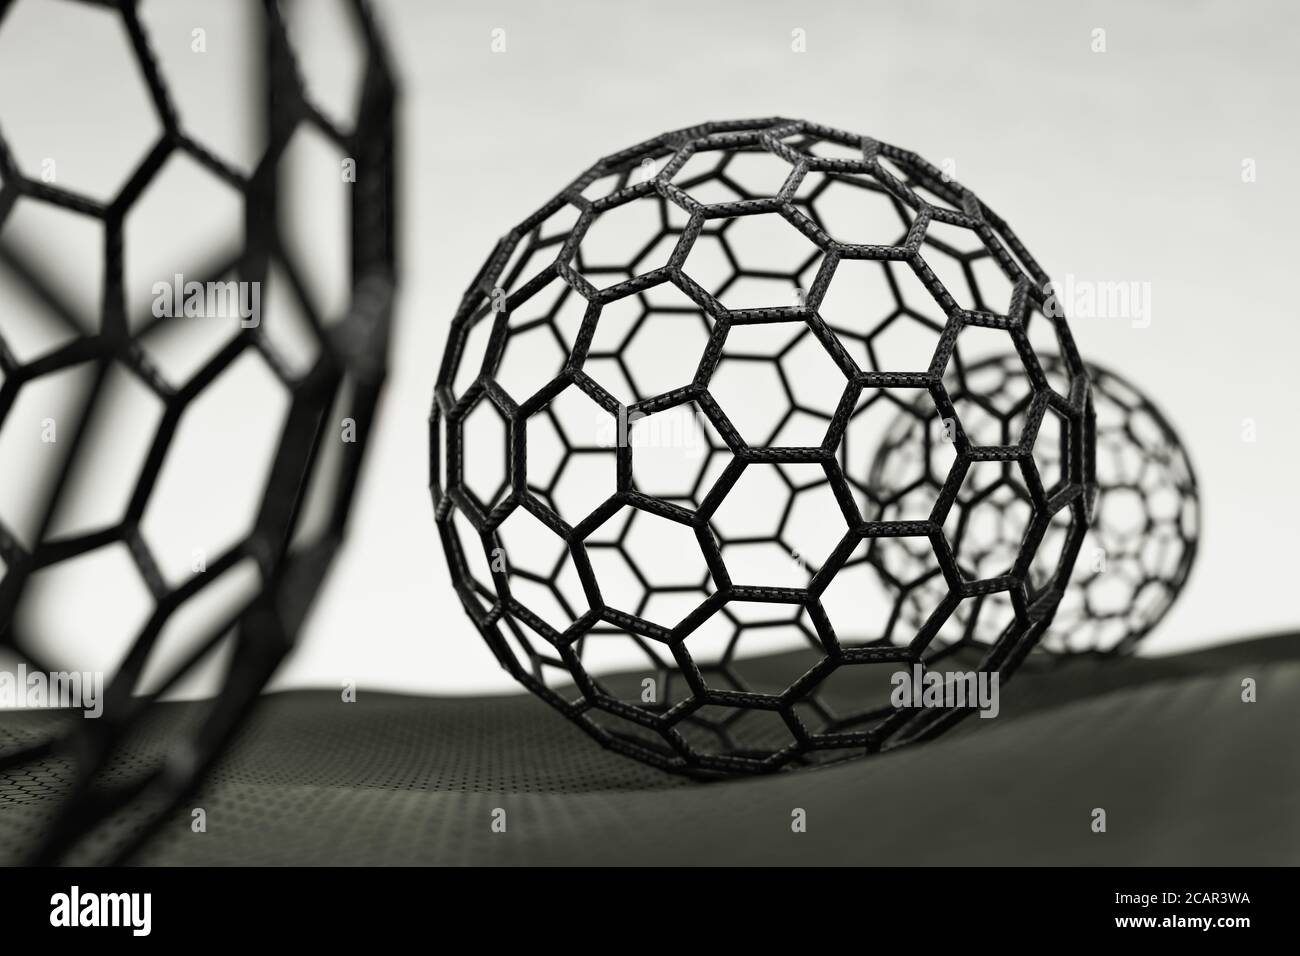 3D rendering of fullerene spheres on white background Stock Photo